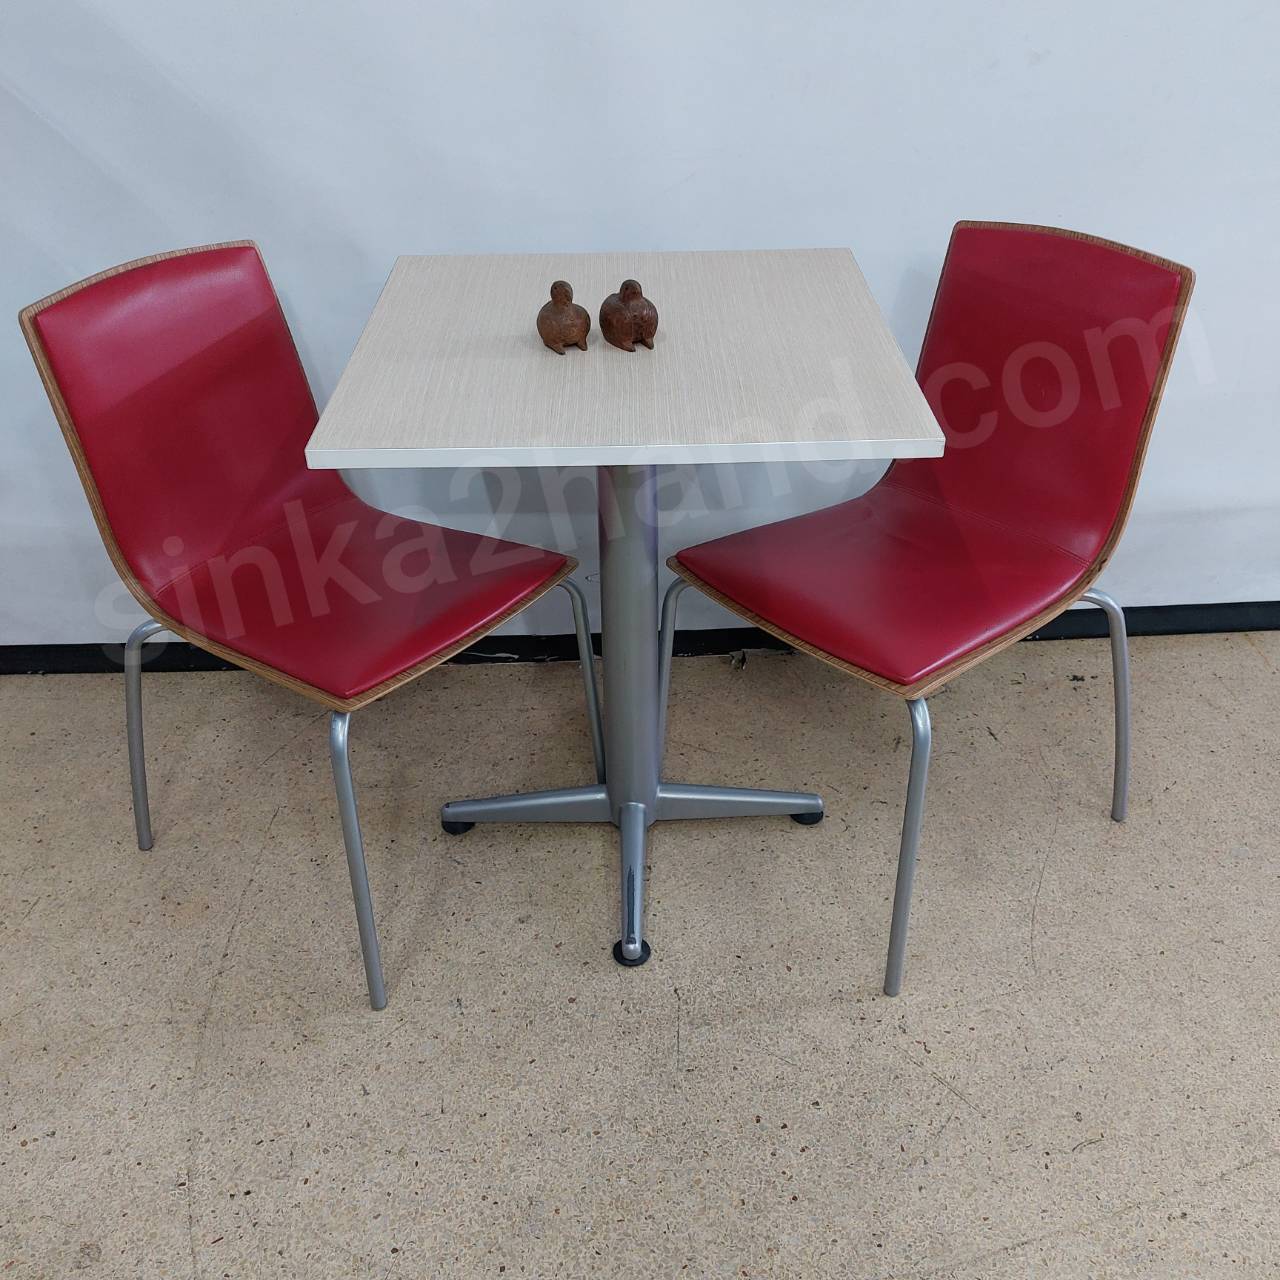  โต๊ะอาหาร 2 ที่นั่งเก้าอี้หนังแดง